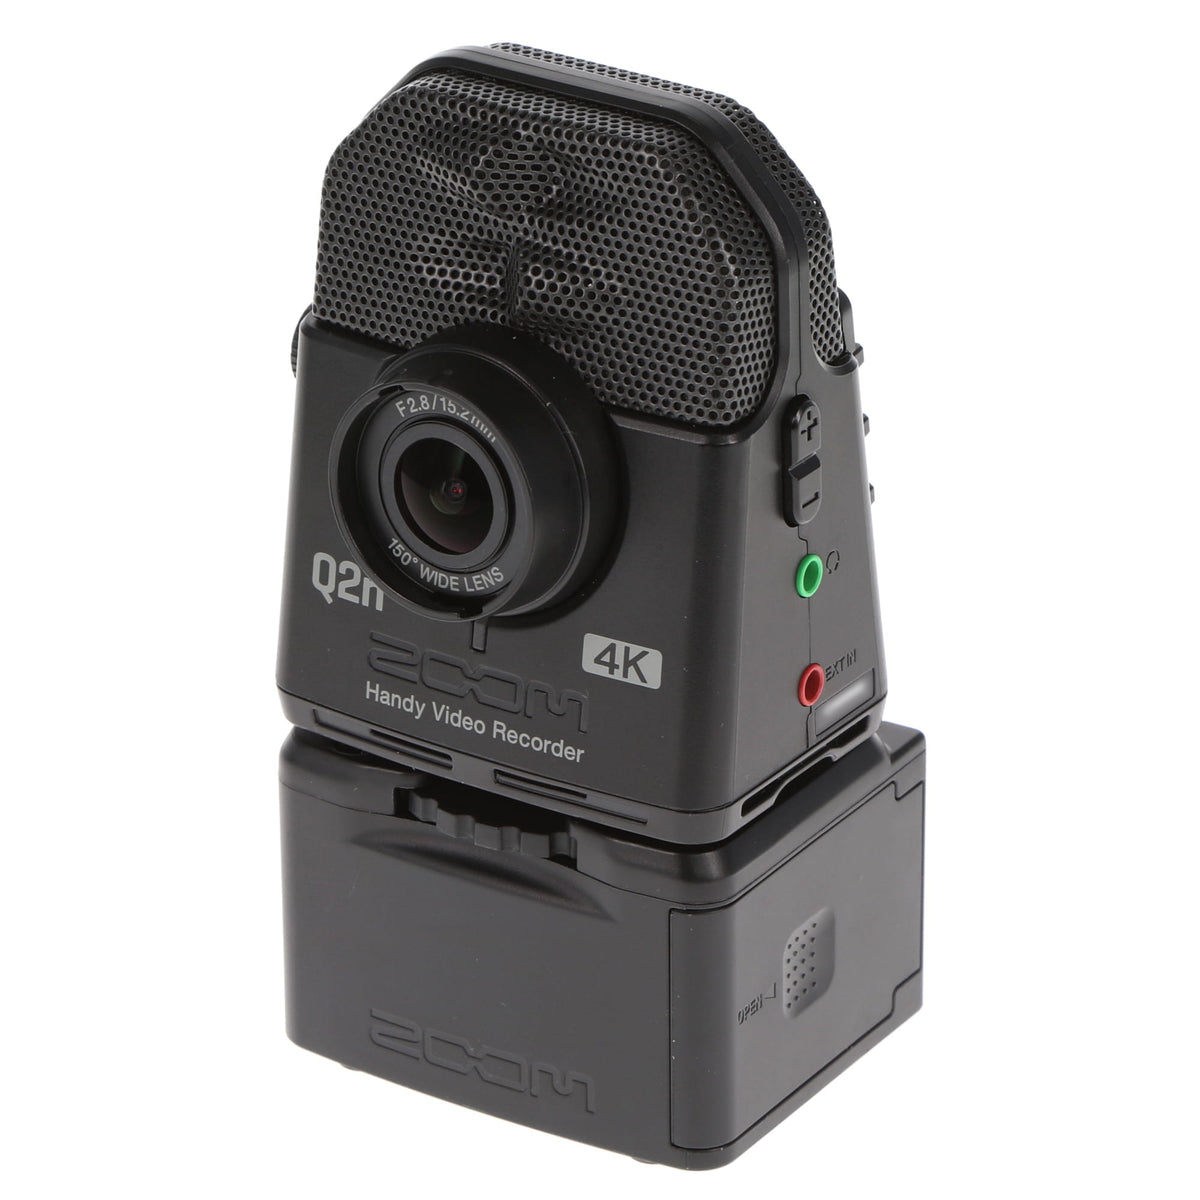 【大創業祭】【中古品】ZOOM Q2n-4K ハンディビデオレコーダー